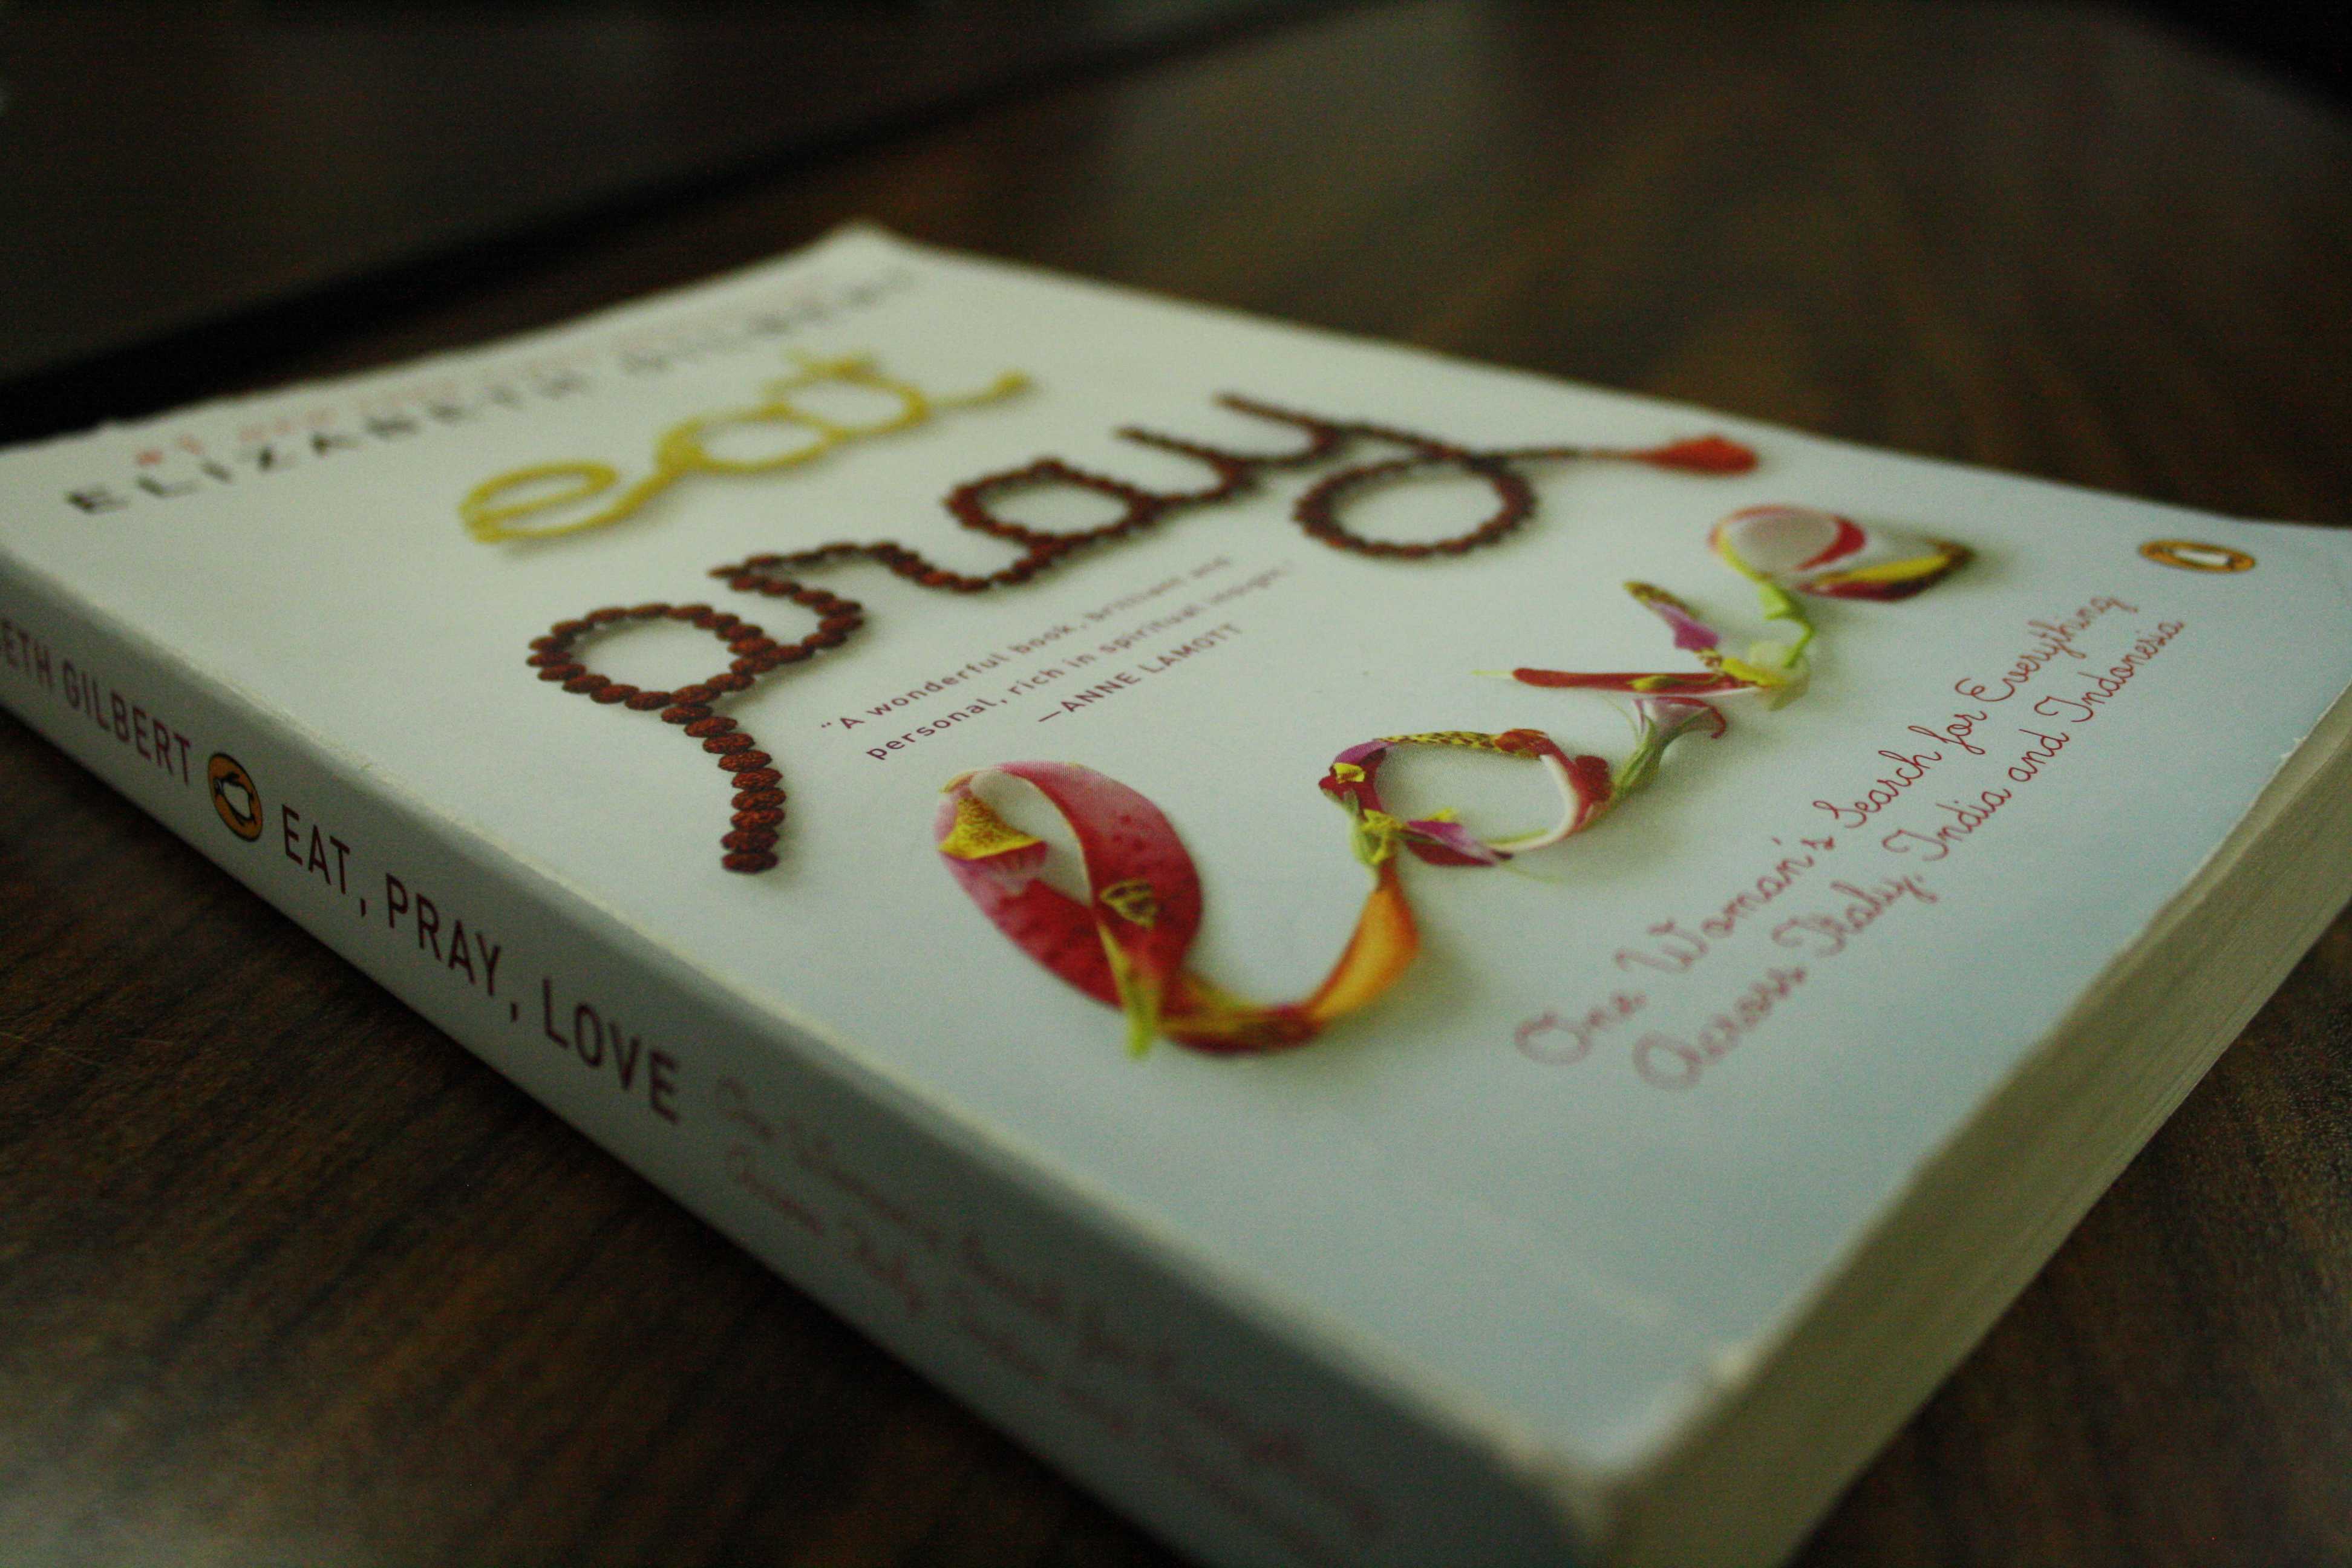 book similar to eat pray love